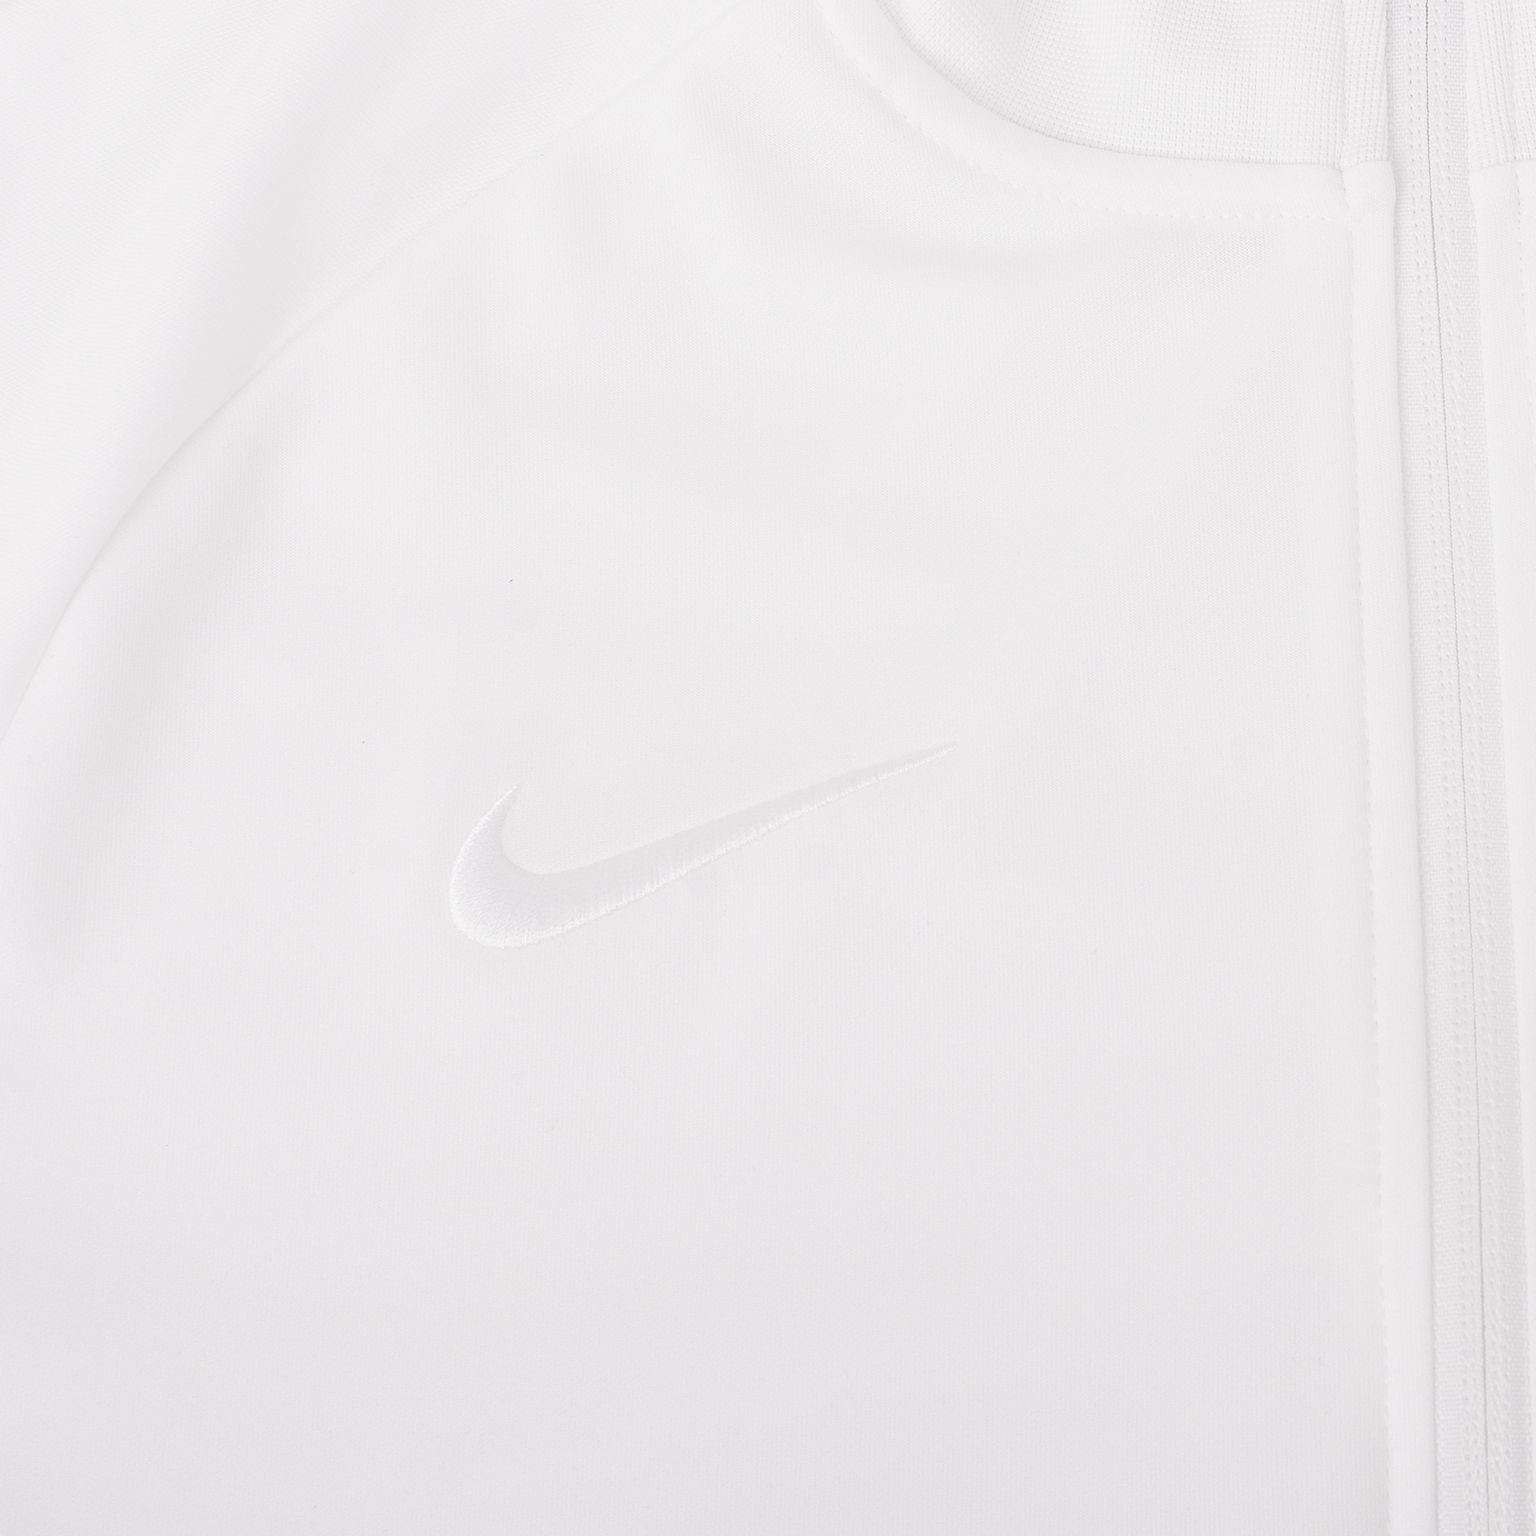 Олимпийка Nike I96 сборной Франции сезон 2020/21